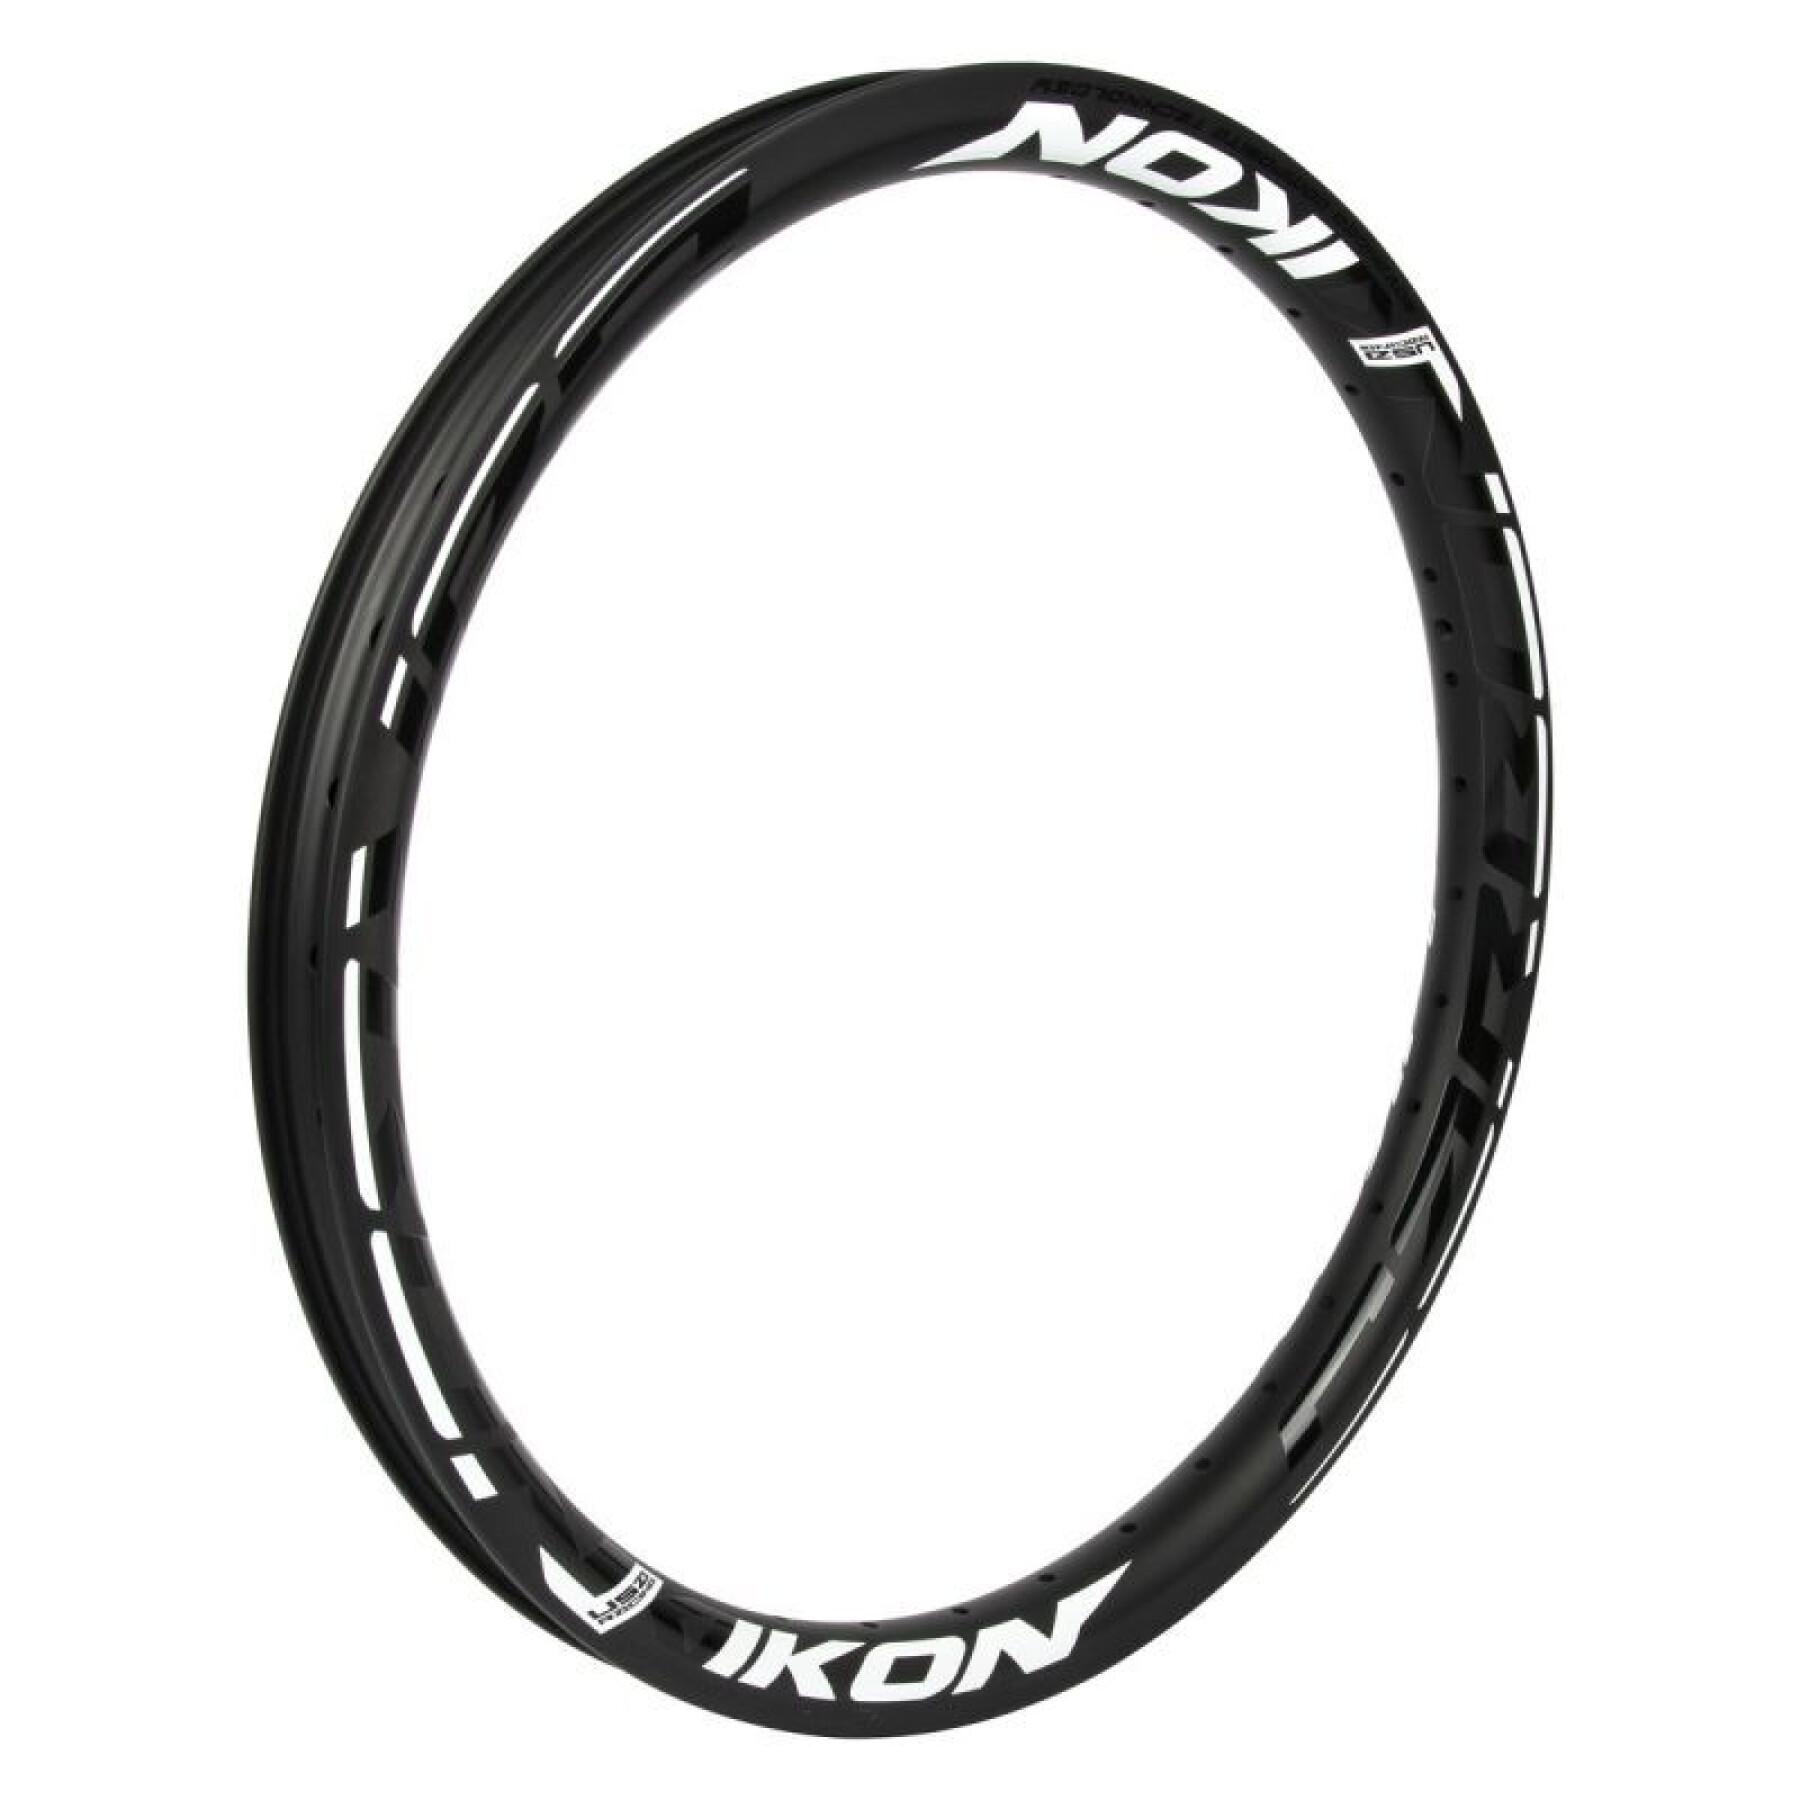 36-hole rim without surface brake Ikon